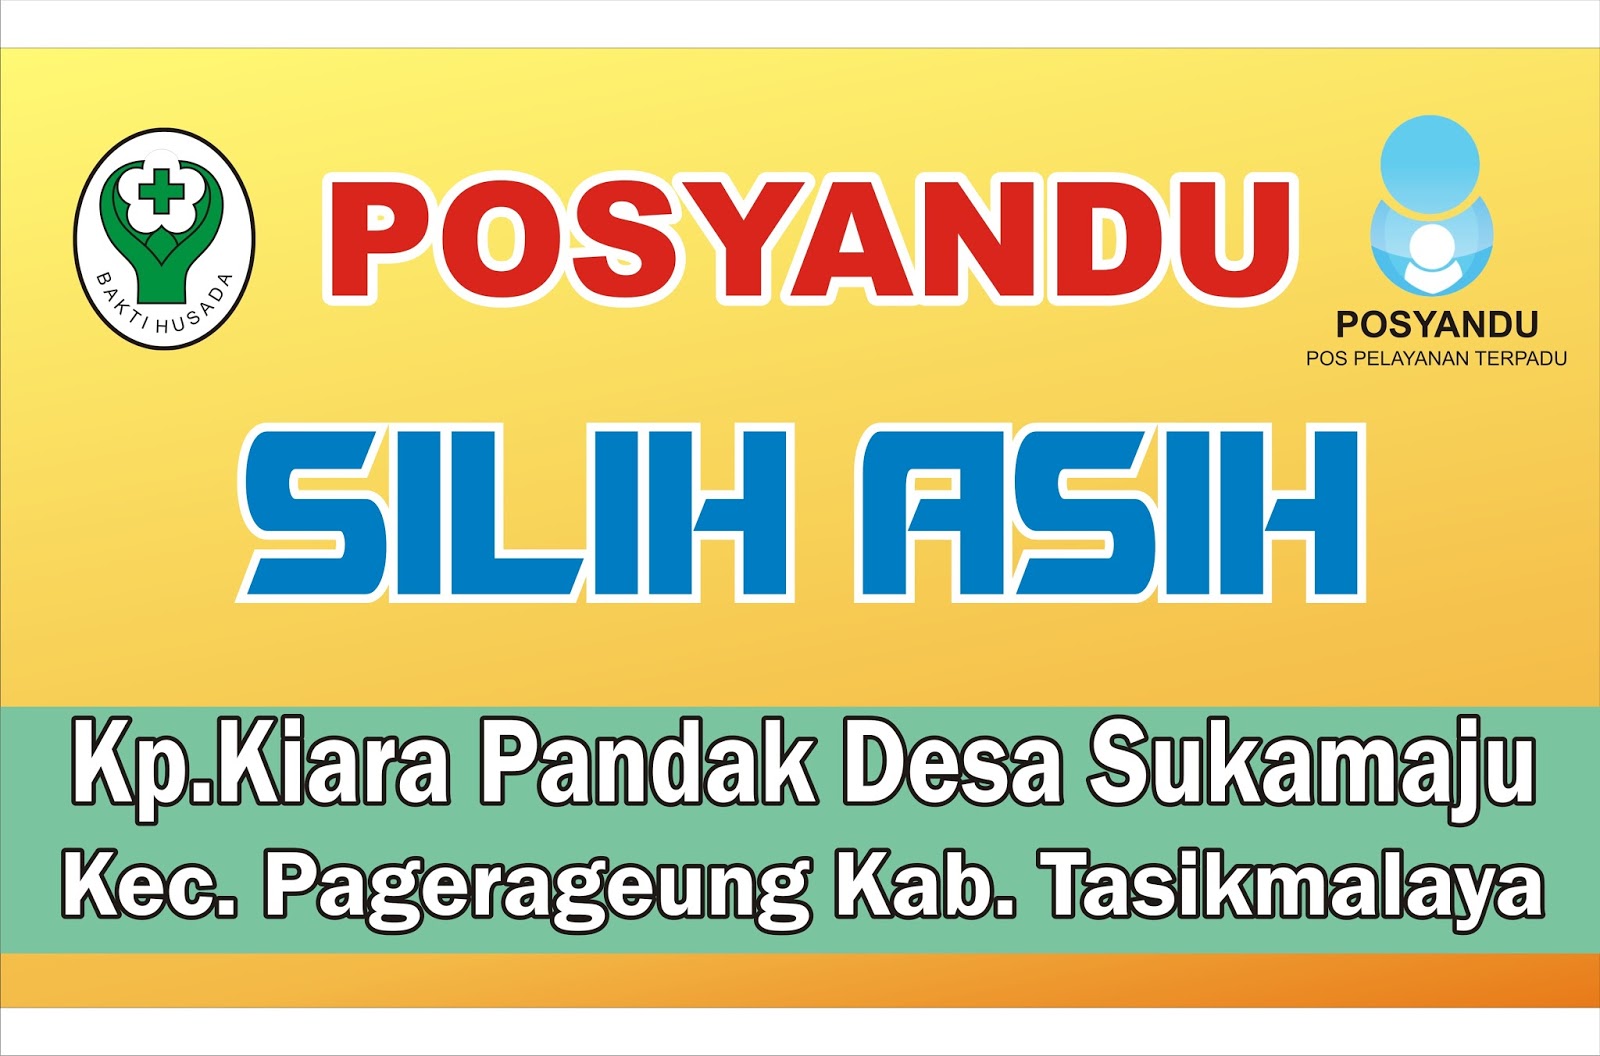 Contoh Spanduk Posyandu - KARYAKU